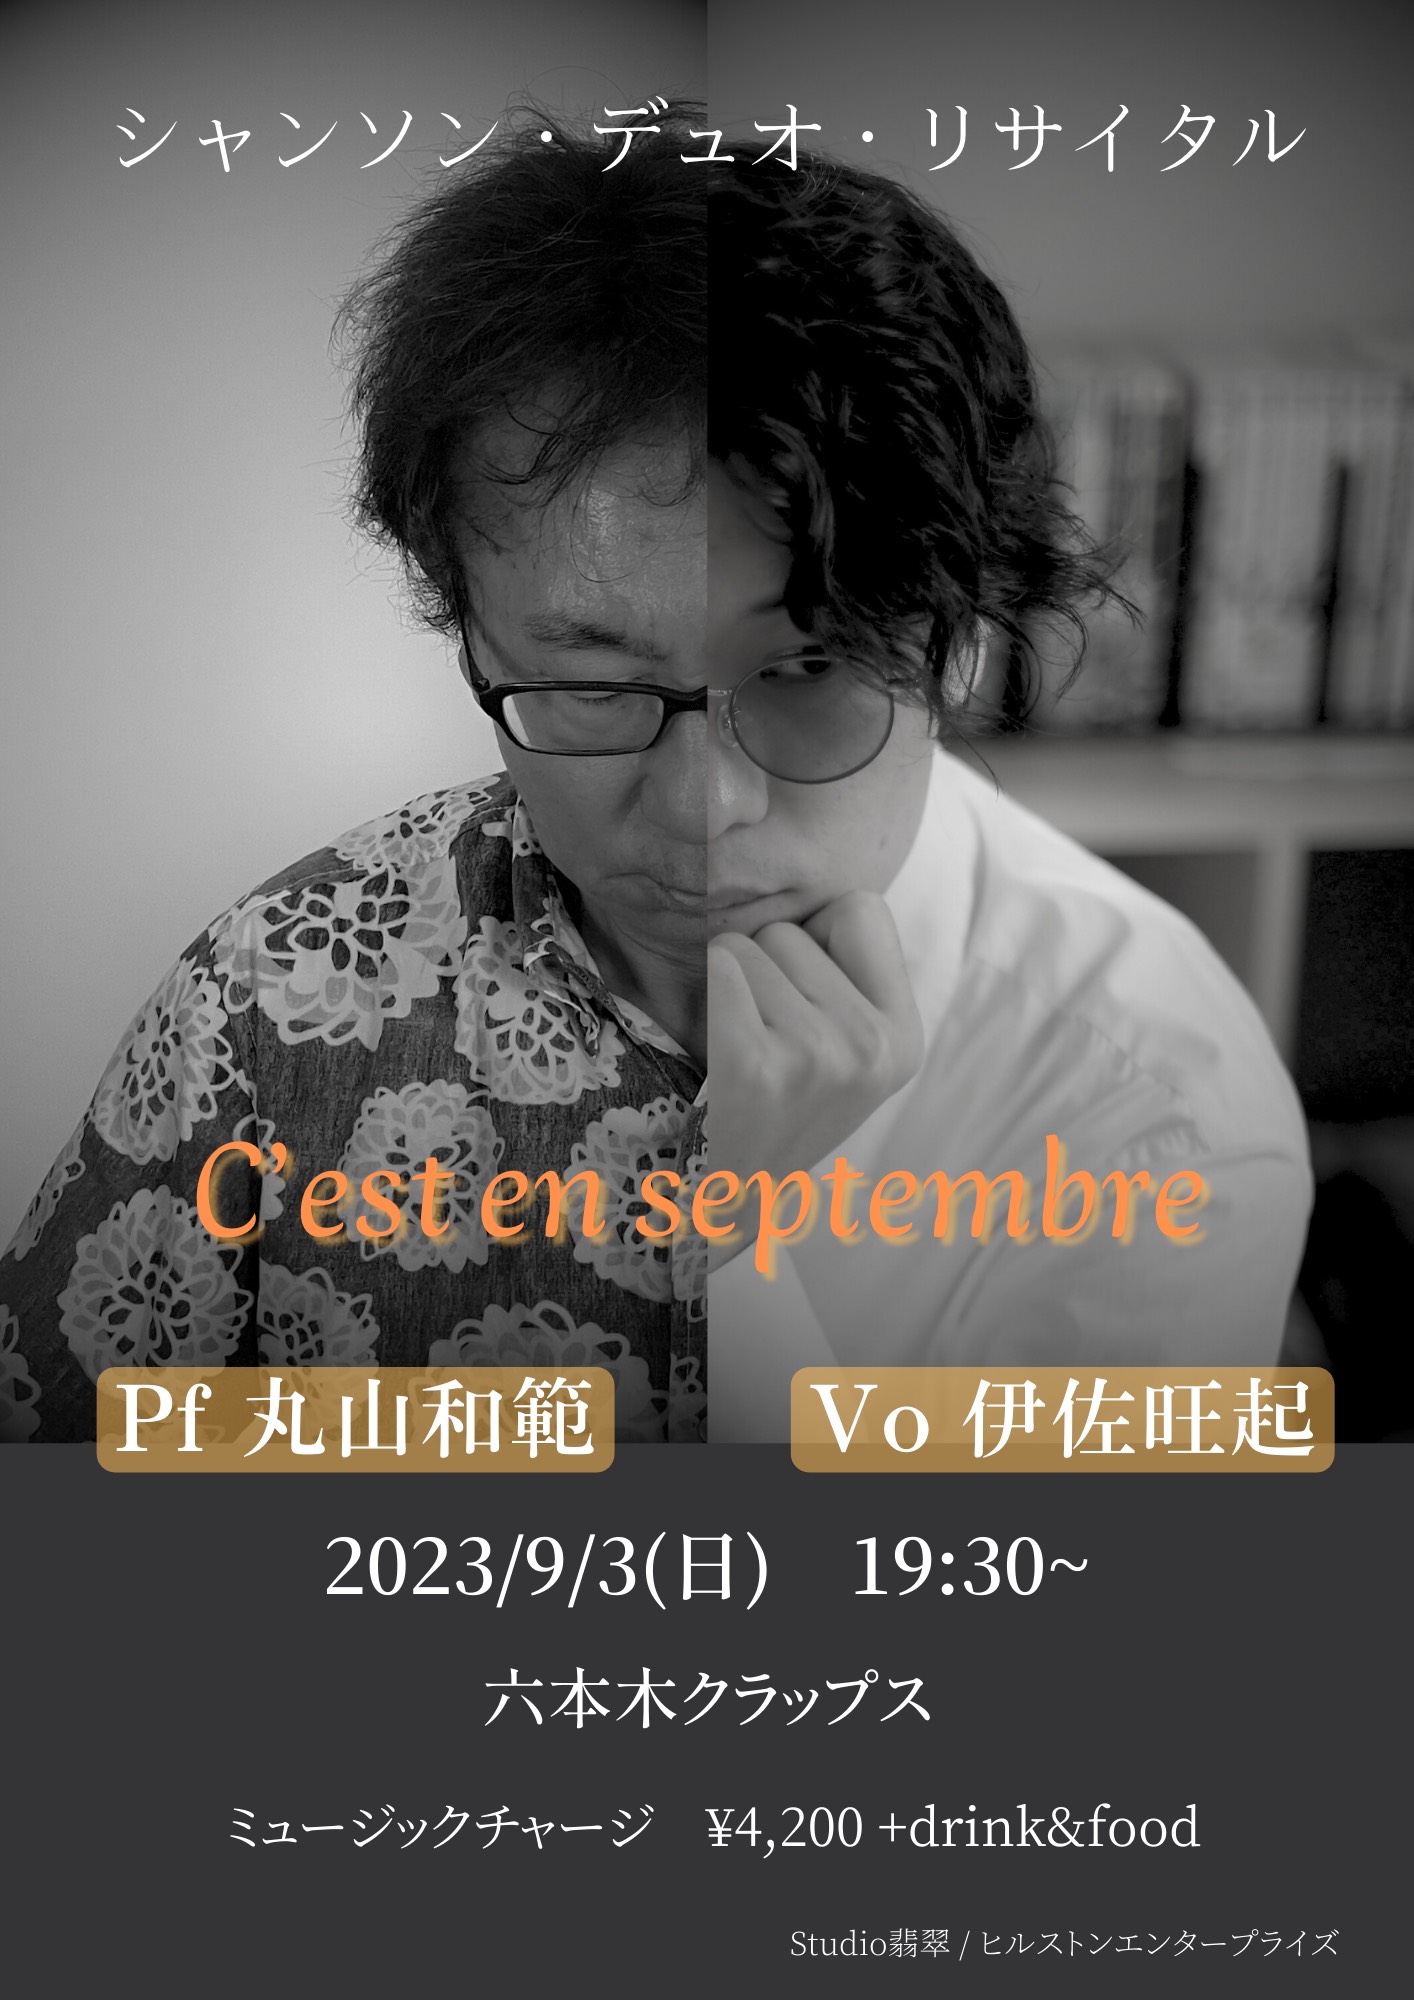 伊佐旺起&丸山和範 シャンソン・デュオ・リサイタル『C’est en septembre』【夜部】《同時配信あり》